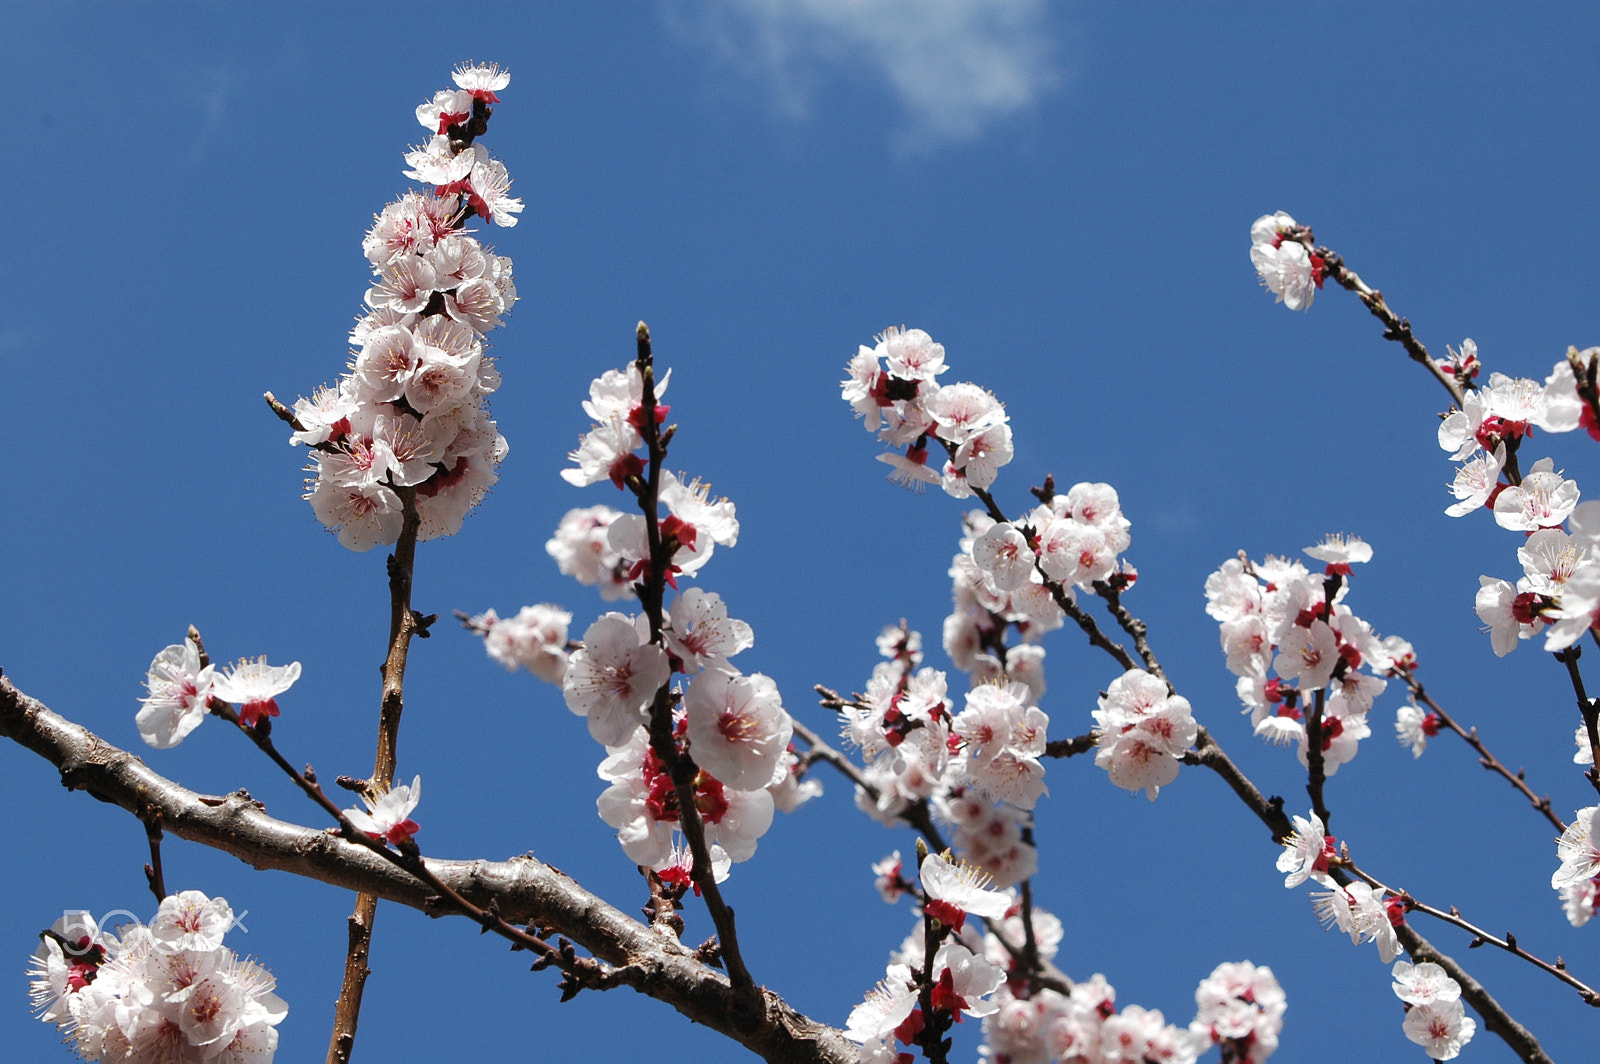 Nikon D70 sample photo. Pomegranate tree blossom photography